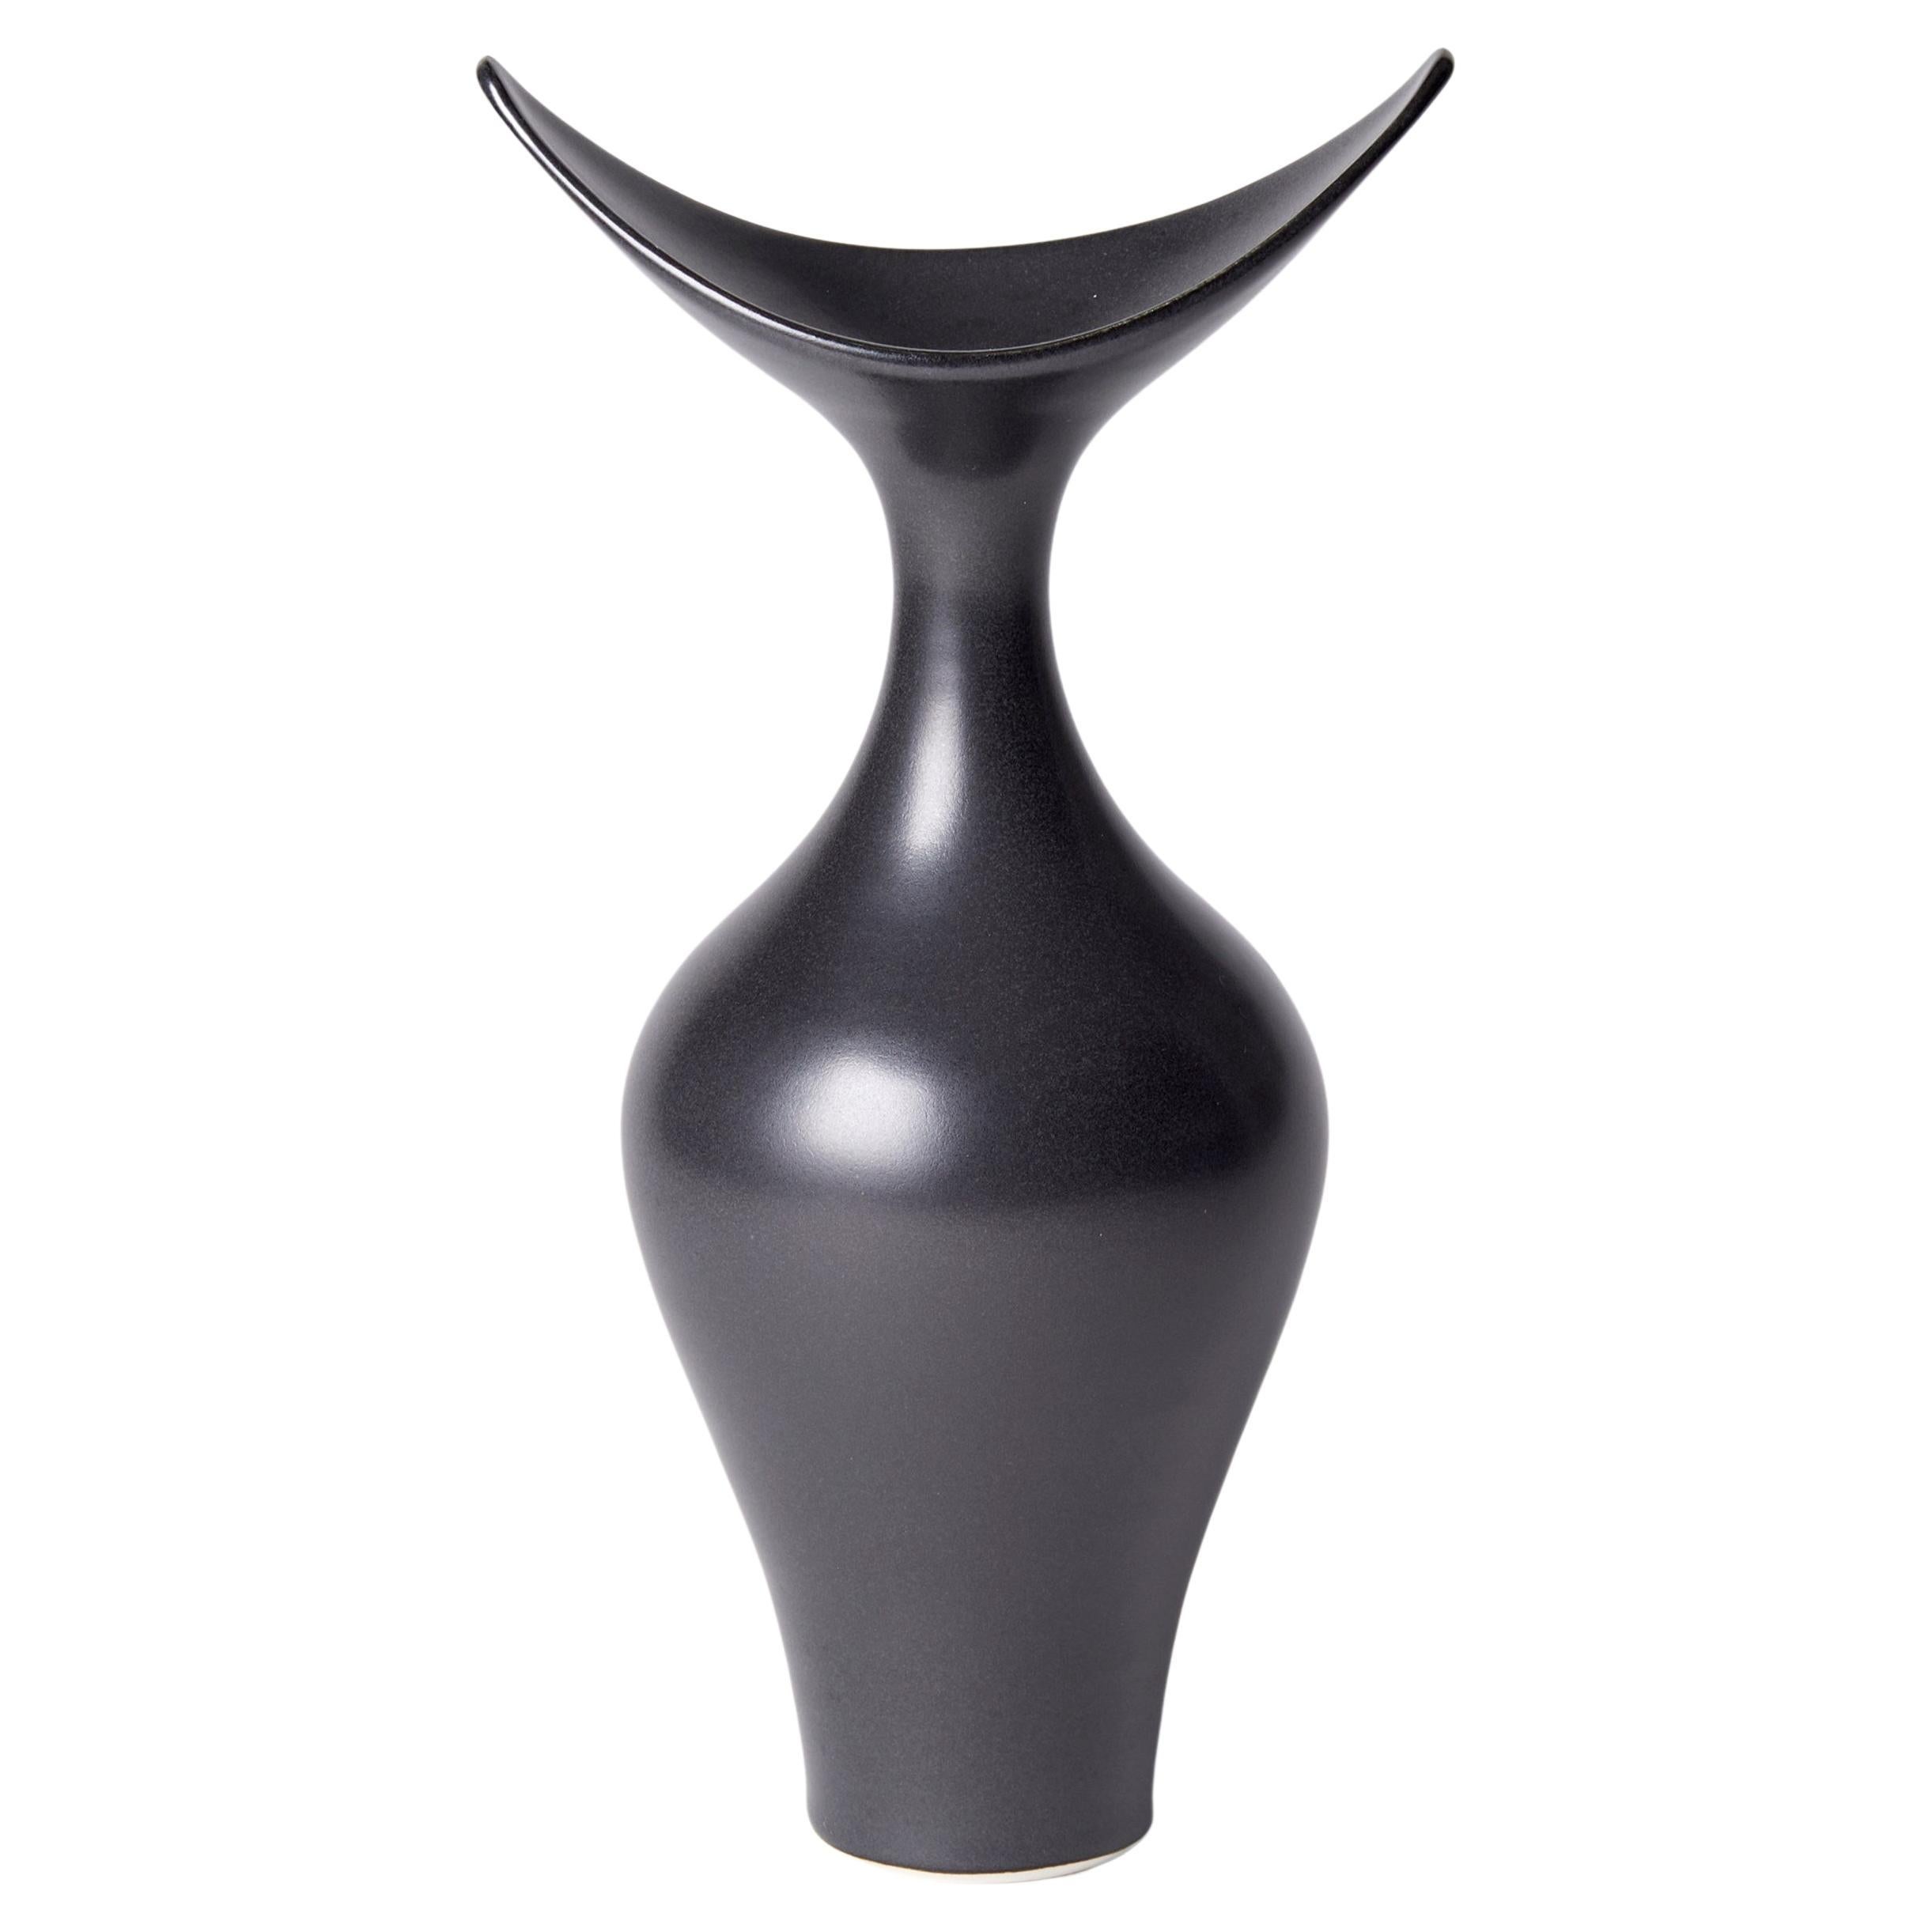 Boat Necked Vase I, a Black / Ebony Sculptural Porcelain Vase by Vivienne Foley